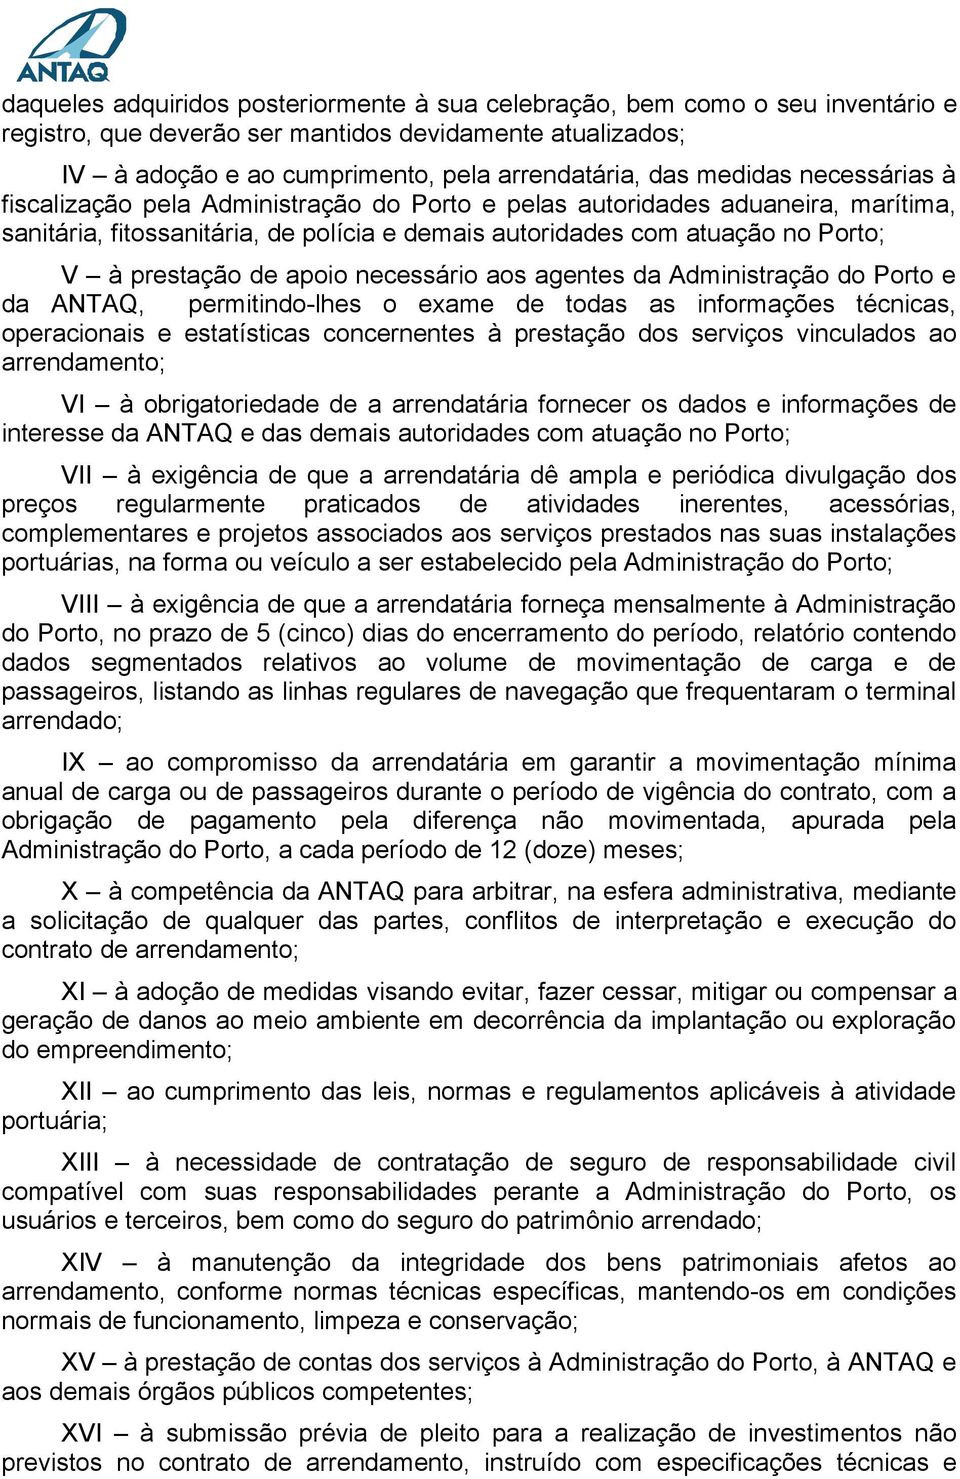 de apoio necessário aos agentes da Administração do Porto e da ANTAQ, permitindo-lhes o exame de todas as informações técnicas, operacionais e estatísticas concernentes à prestação dos serviços